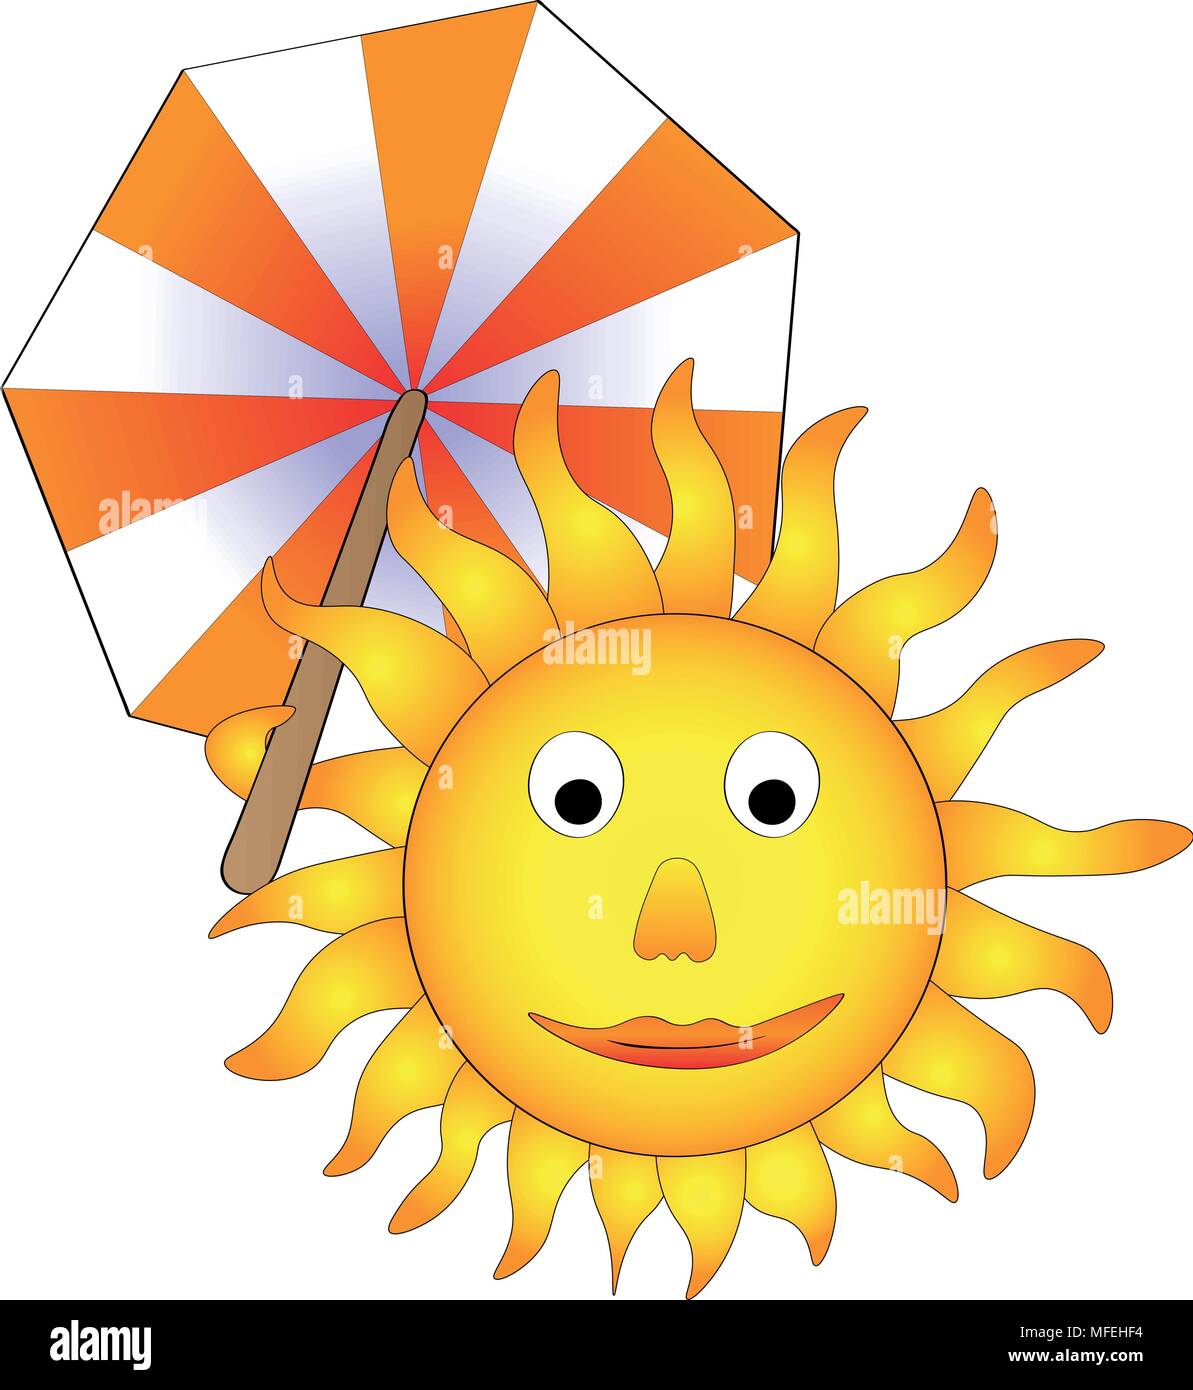 Illustrazione Vettoriale, sorridenti sun con ombrellone, strano concetto di estate sta arrivando Illustrazione Vettoriale